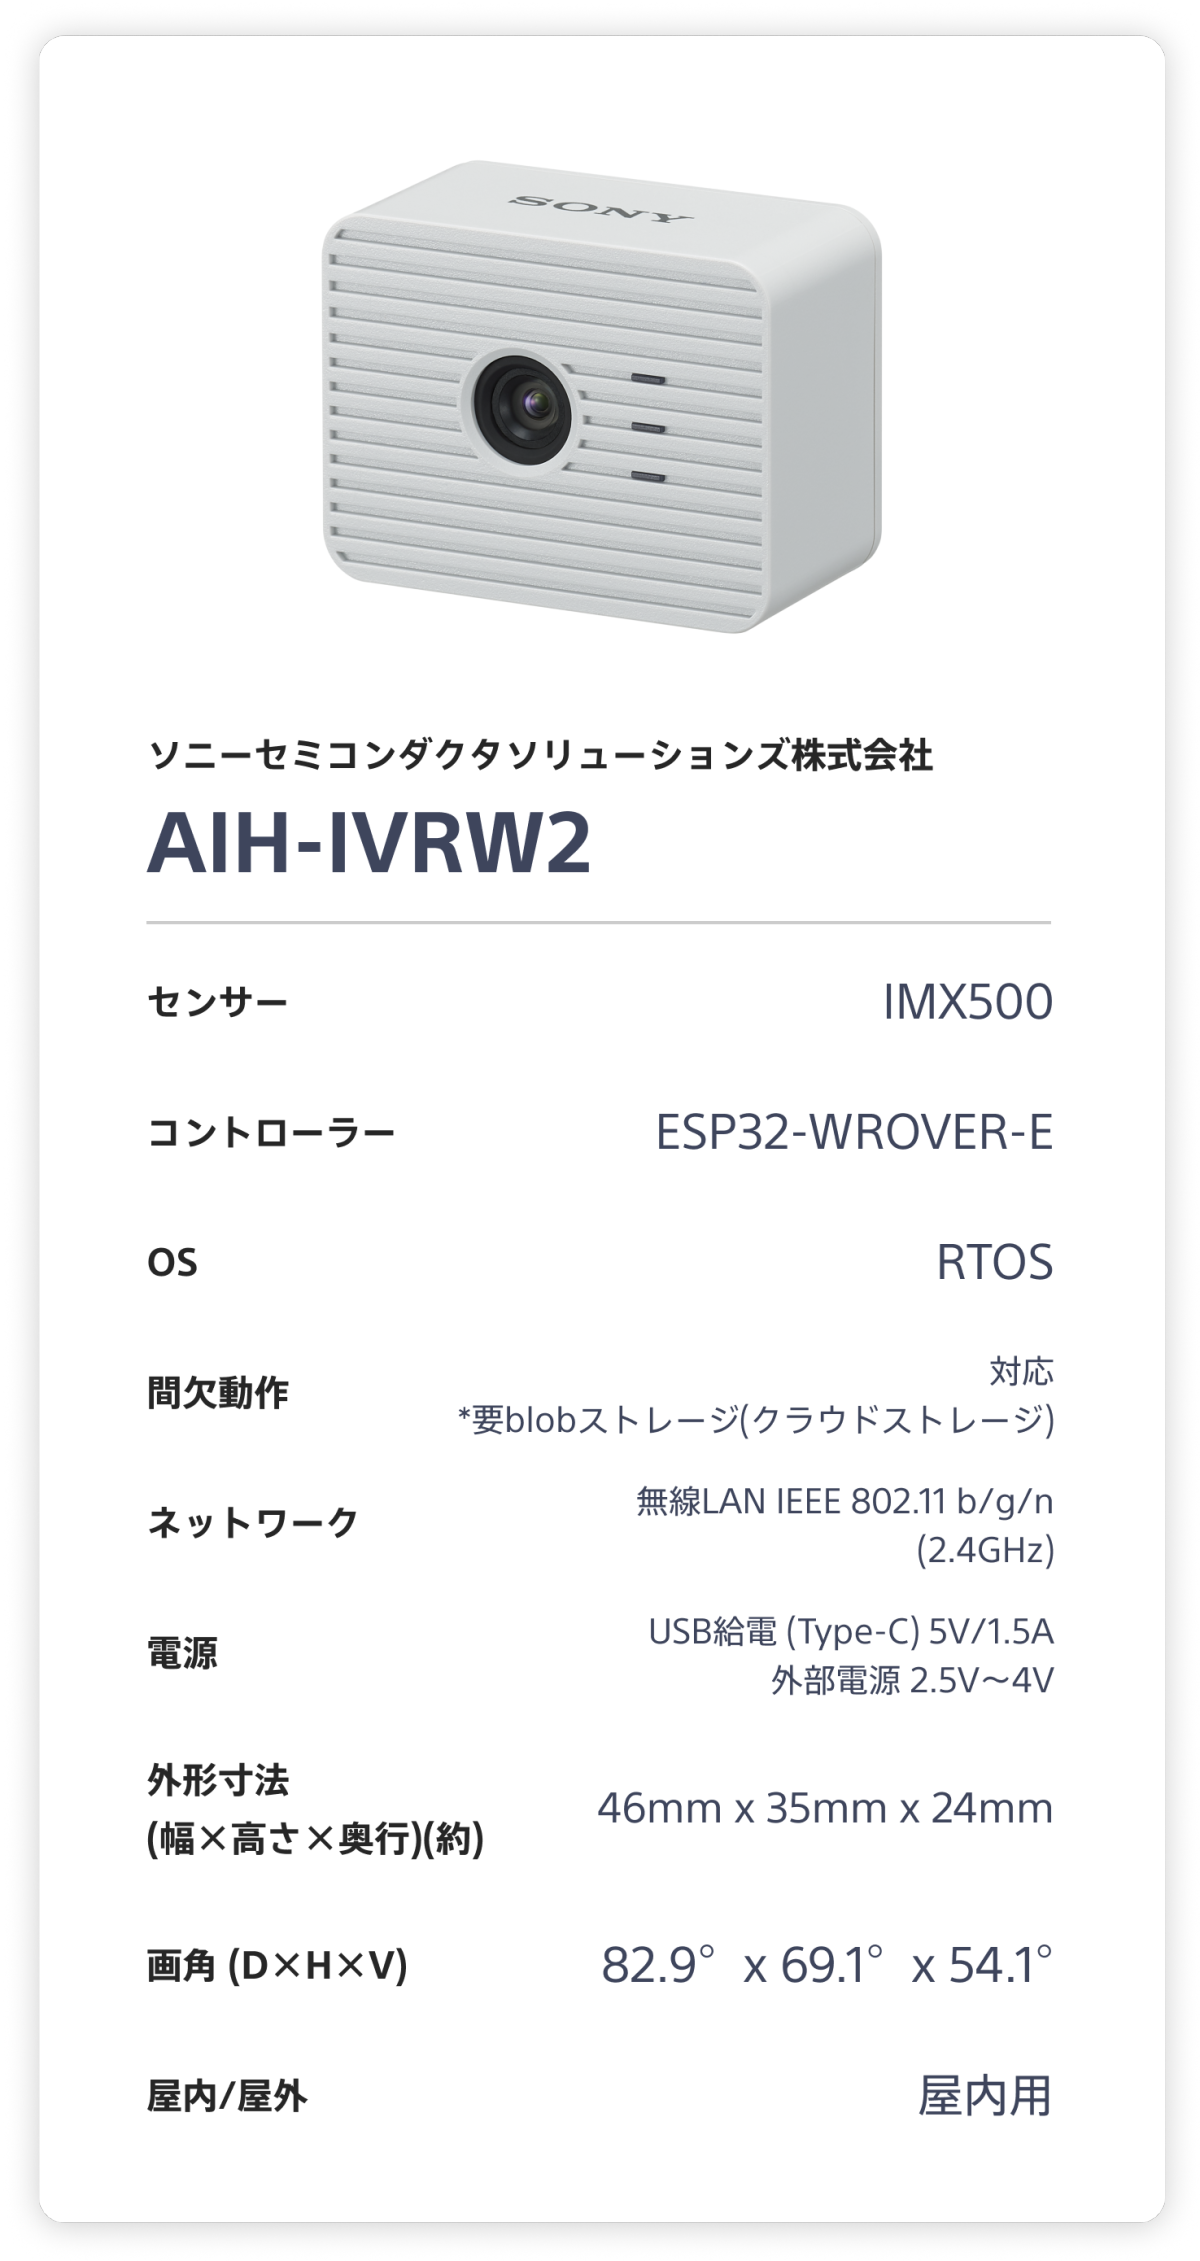 ソニーセミコンダクタソリューションズ株式会社 AIH-IVRW2。 センサー：IMX500。 コントローラー：ESP32-WROVER-E。 OS：RTOS。 間欠動作：対応 (要blobストレージ(クラウドストレージ))。 ネットワーク：無線LAN IEEE 802.11 b/g/n (2.4GHz)。 電源：USB給電 (Type-C) 5V/1.5A 外部電源 2.5V～4V。 外形寸法(幅×高さ×奥行)(約)：46mm x 35mm x 24mm。 画角 (D×H×V)：82.9°x 69.1°x 54.1°。 屋内/屋外：屋内用。